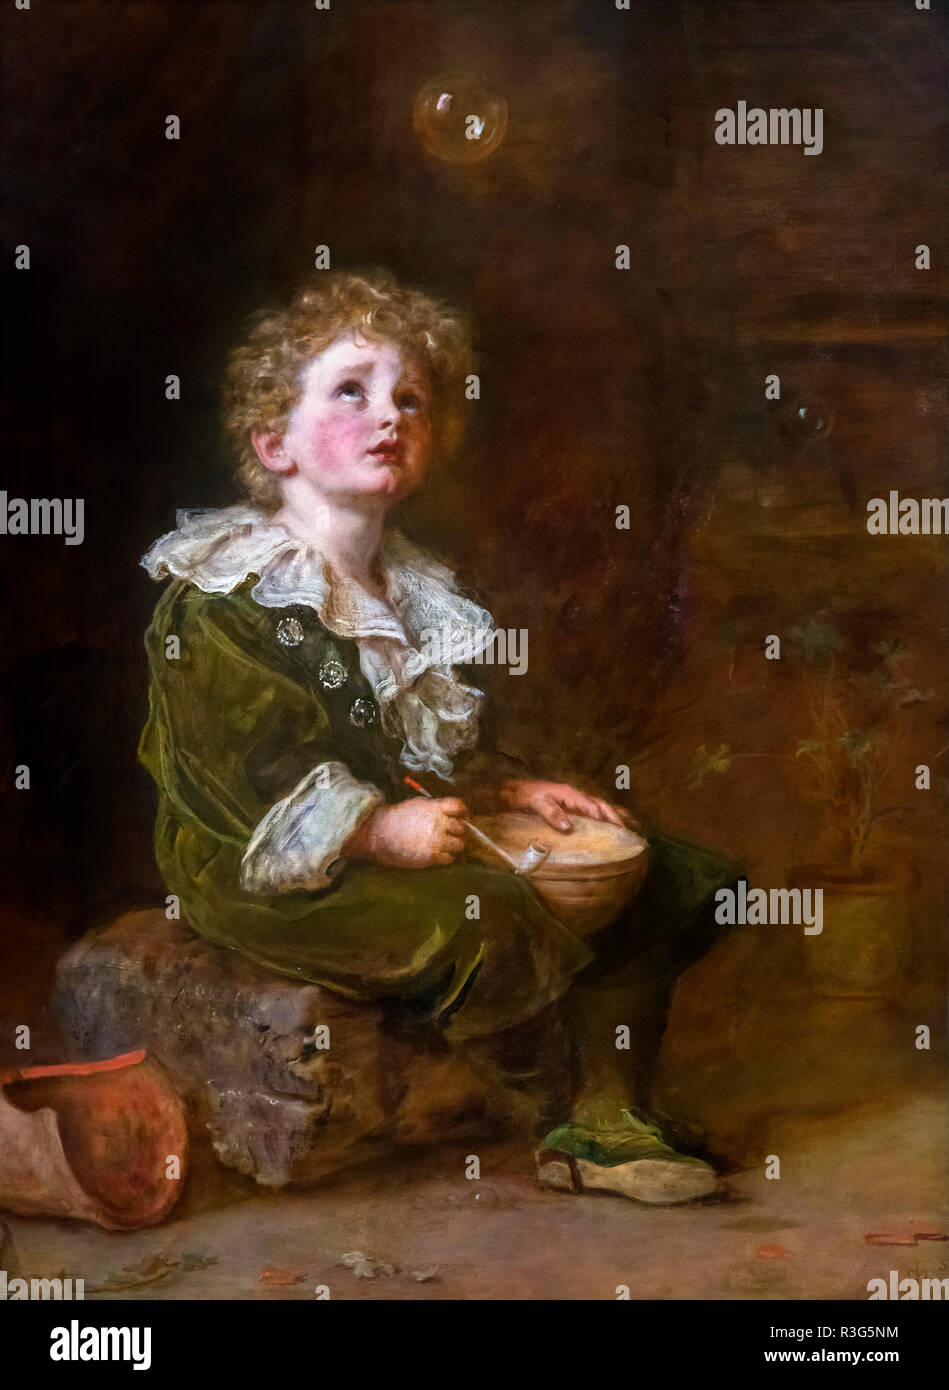 Bulles par John Everett Millais (1829-1896), huile sur toile, 1887. La peinture a été utilisée pendant de nombreuses années comme une publicité pour les poires du savon. Banque D'Images